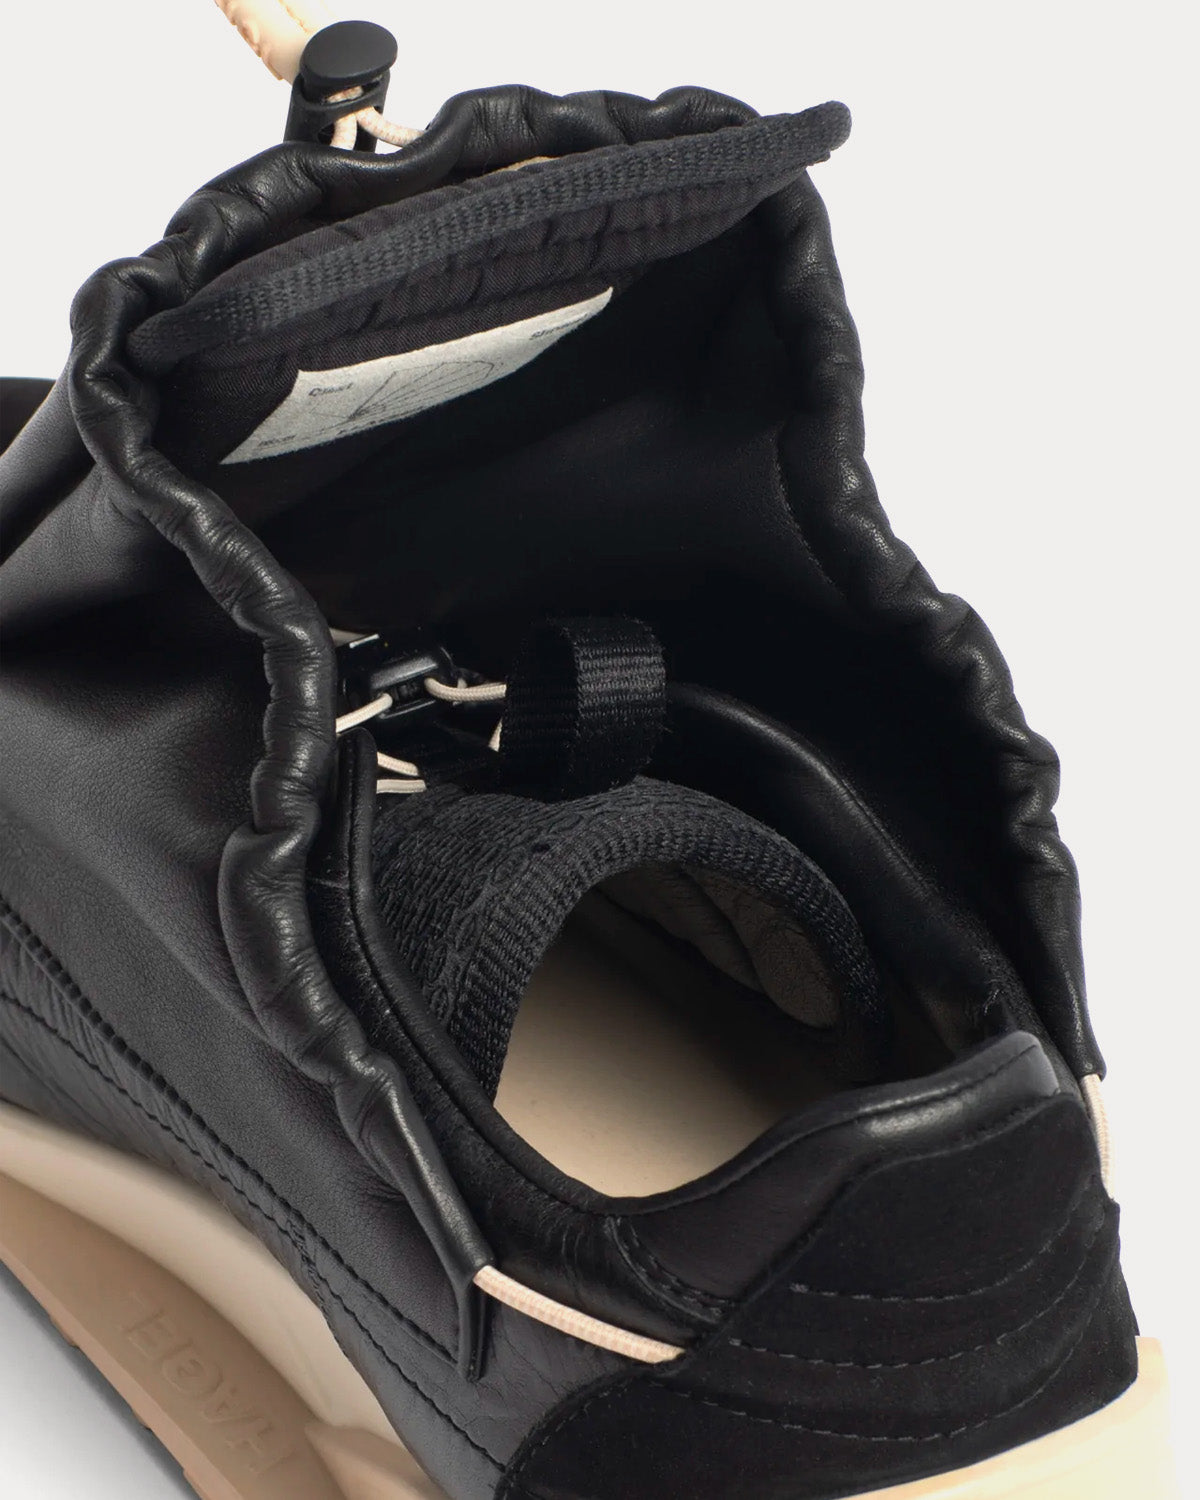 Studio Hagel - Shroud Black Sand Low Top Sneakers